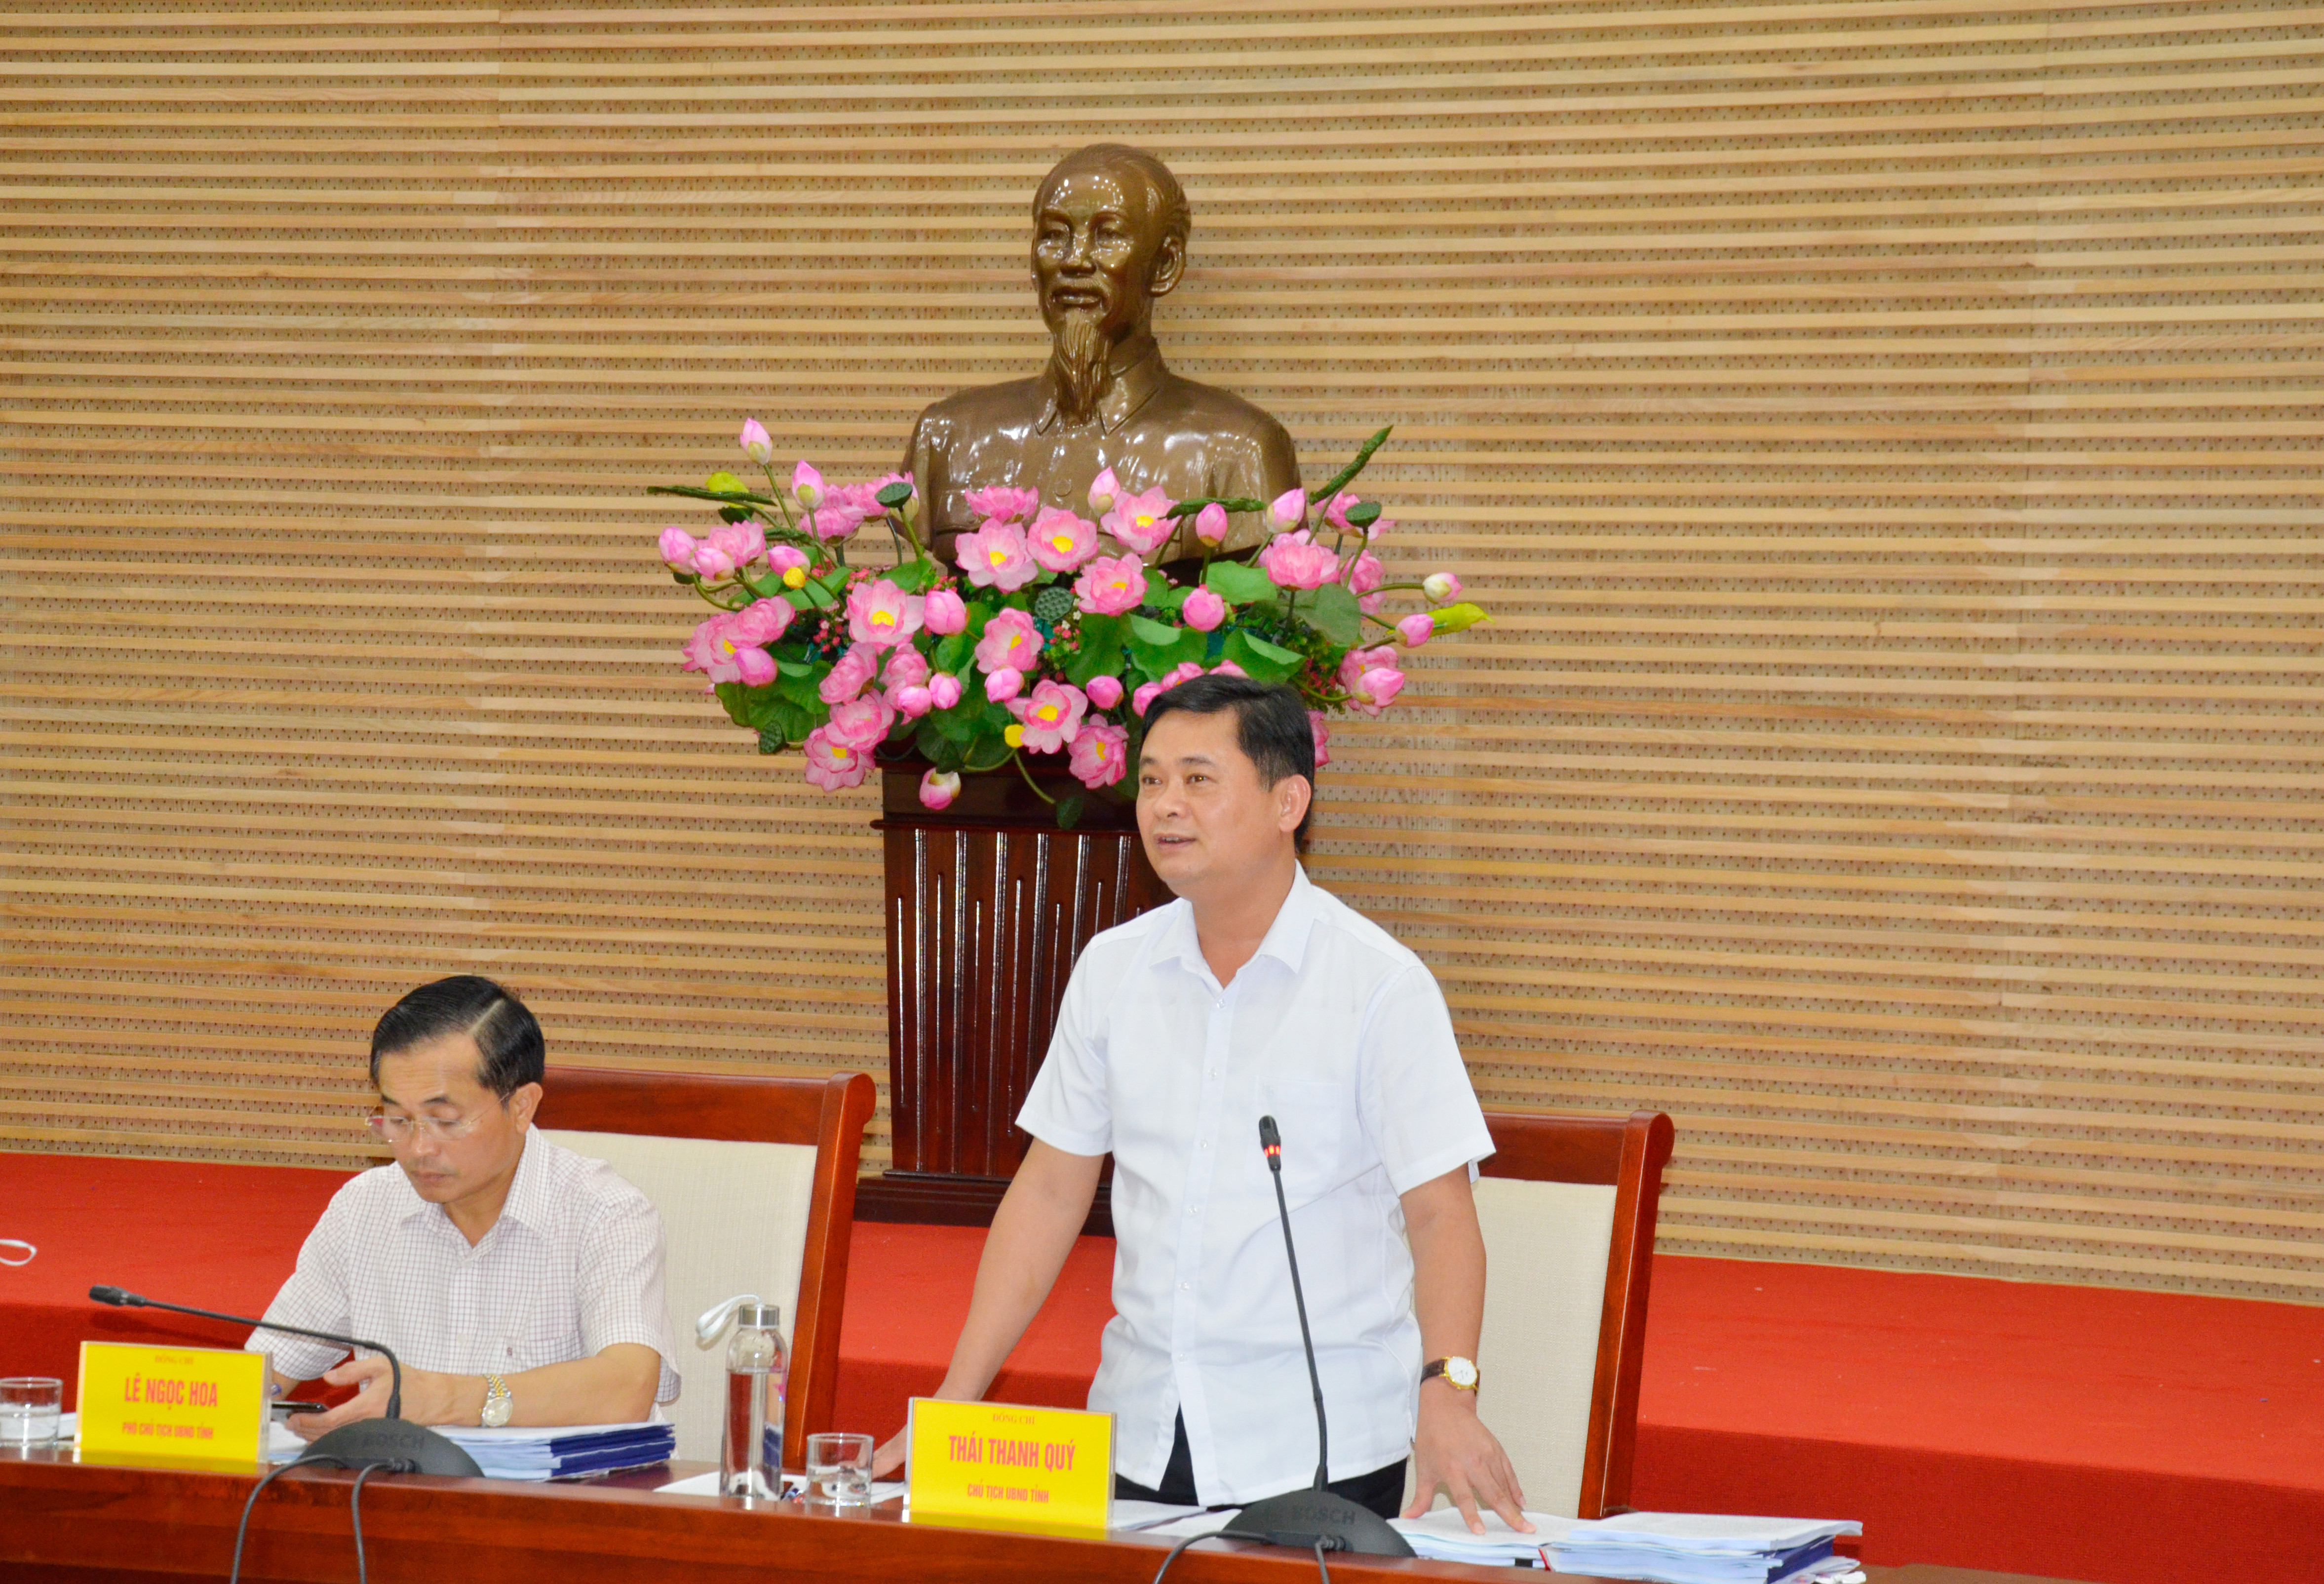 Chủ tịch UBND tỉnh Thái Thanh Quý thống nhất thông qua Đề án thành lập Văn phòng đăng ký đất đai cấp tỉnh. Ảnh: Thanh Lê